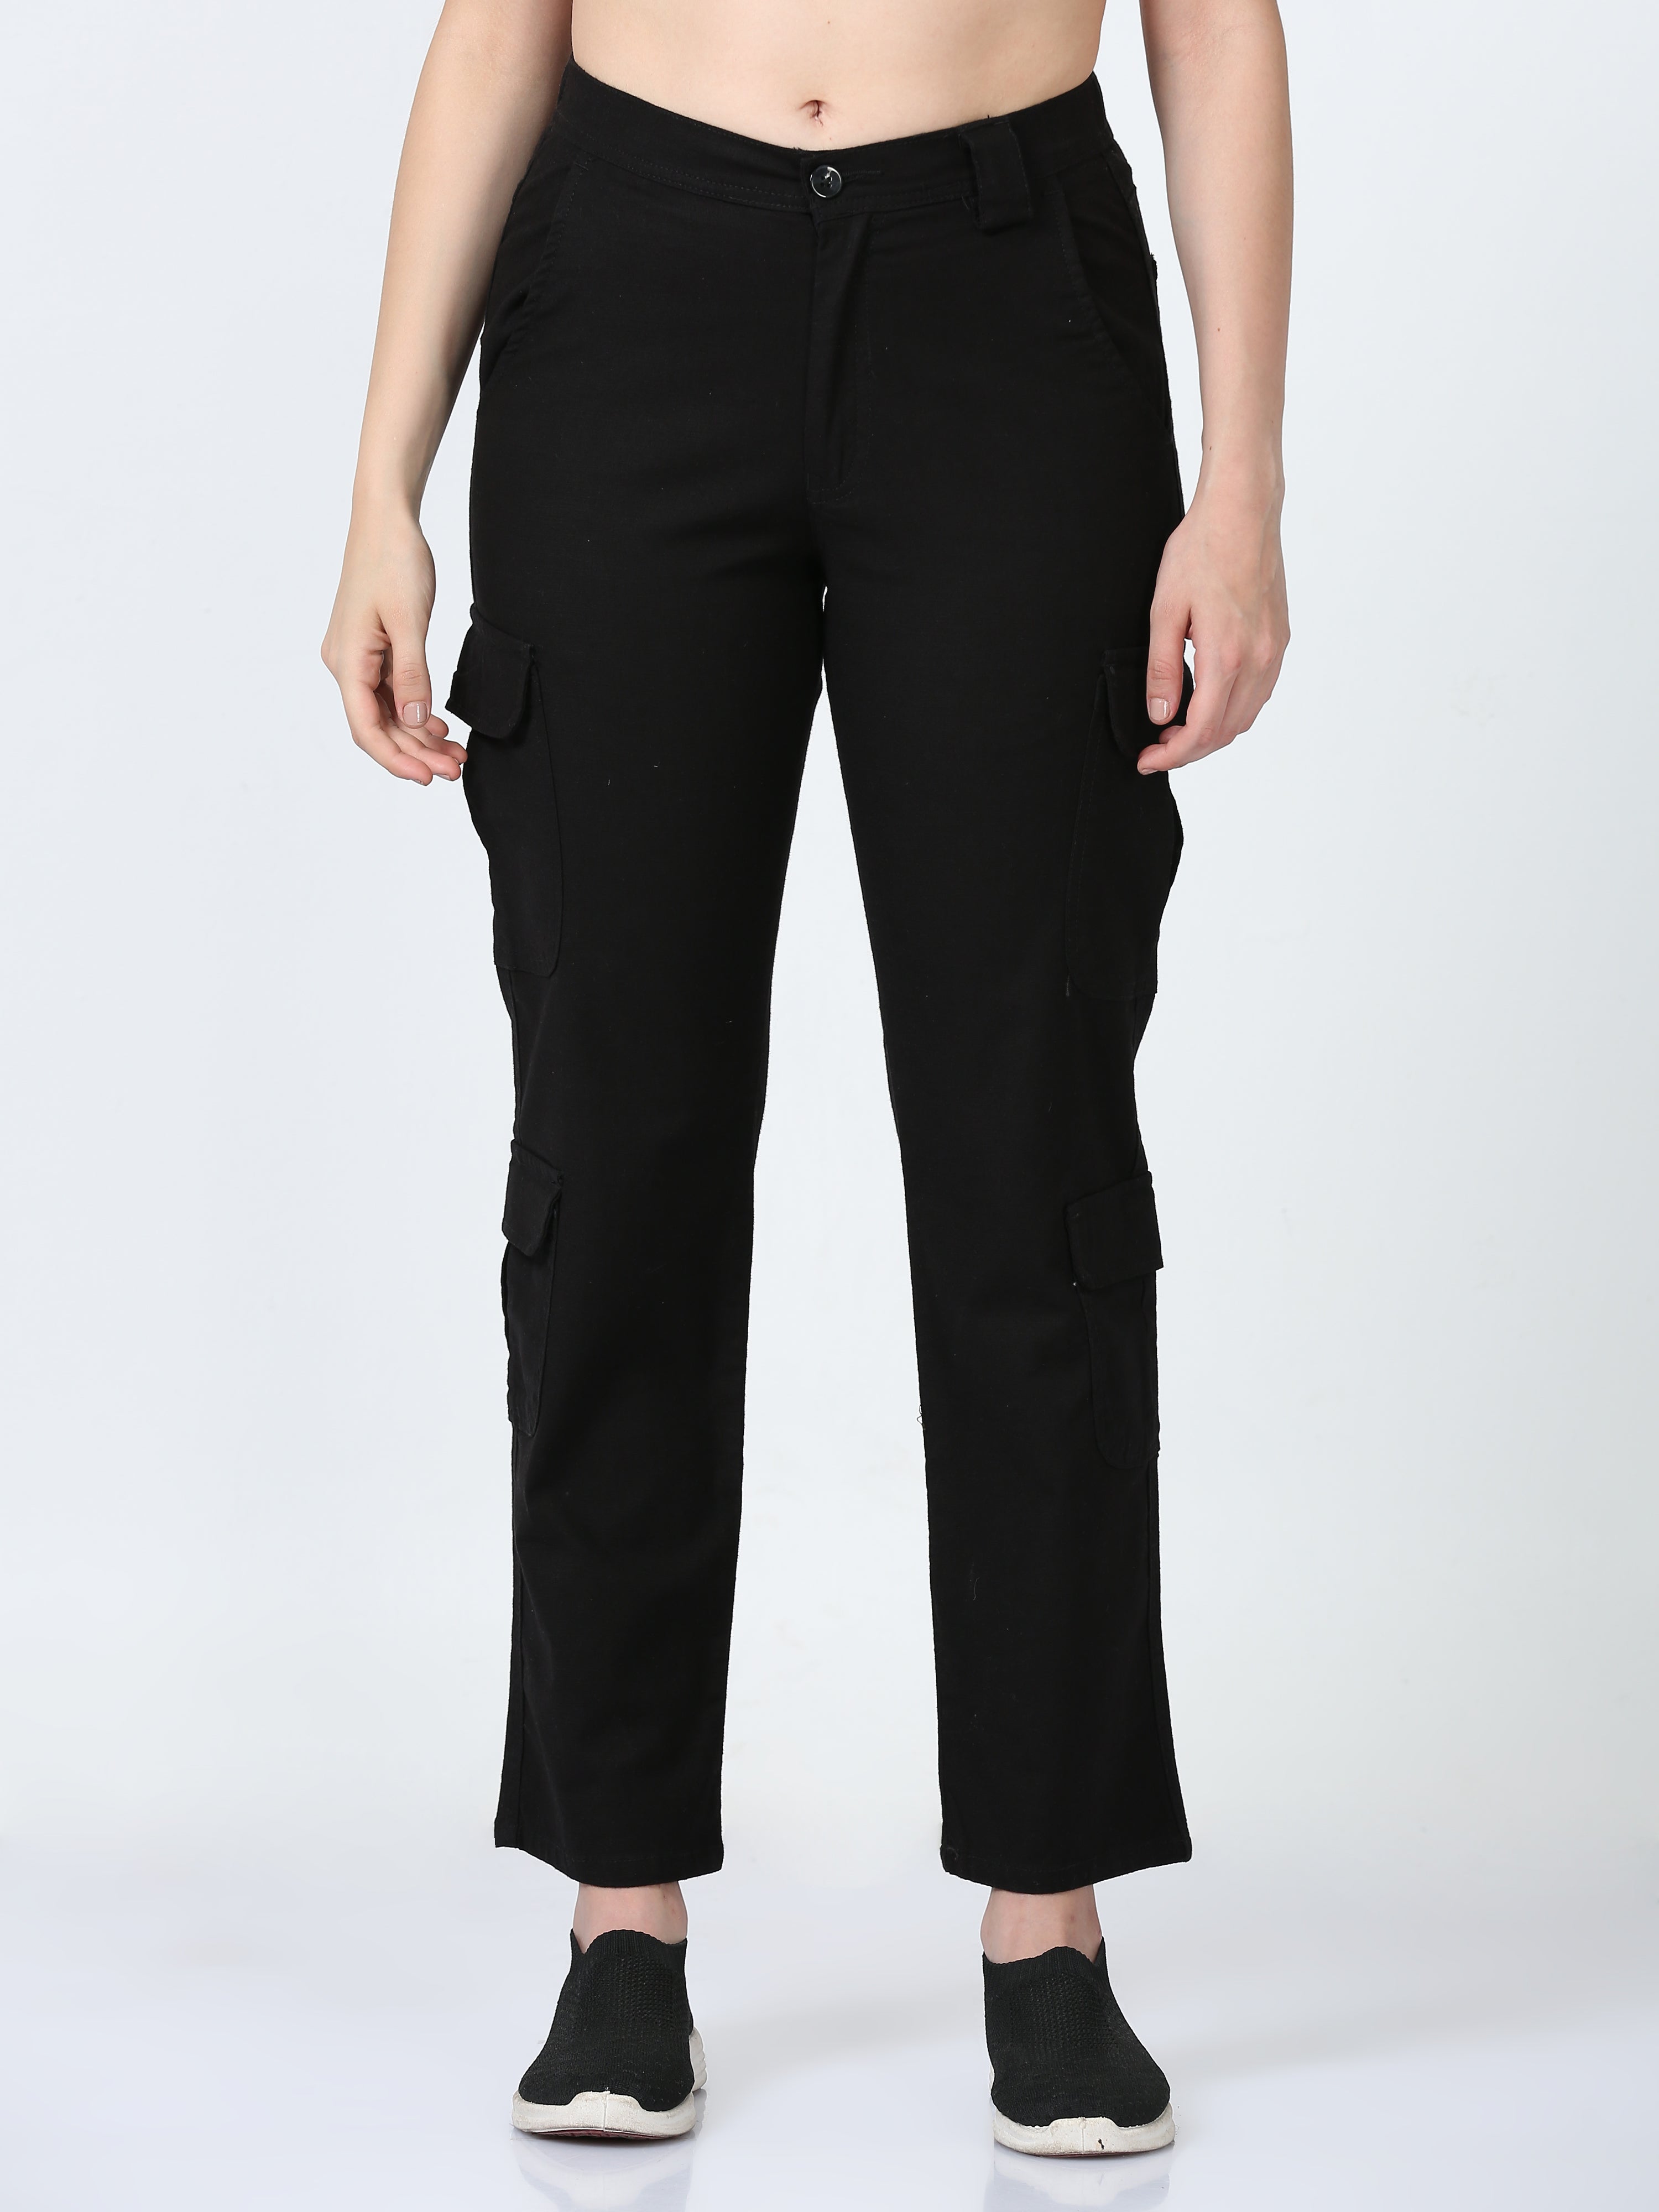 The Drop Women's Black Belted Cargo Pant by @karenbritchick | Amazon  fashion eu, Fashion, Cargo pants women